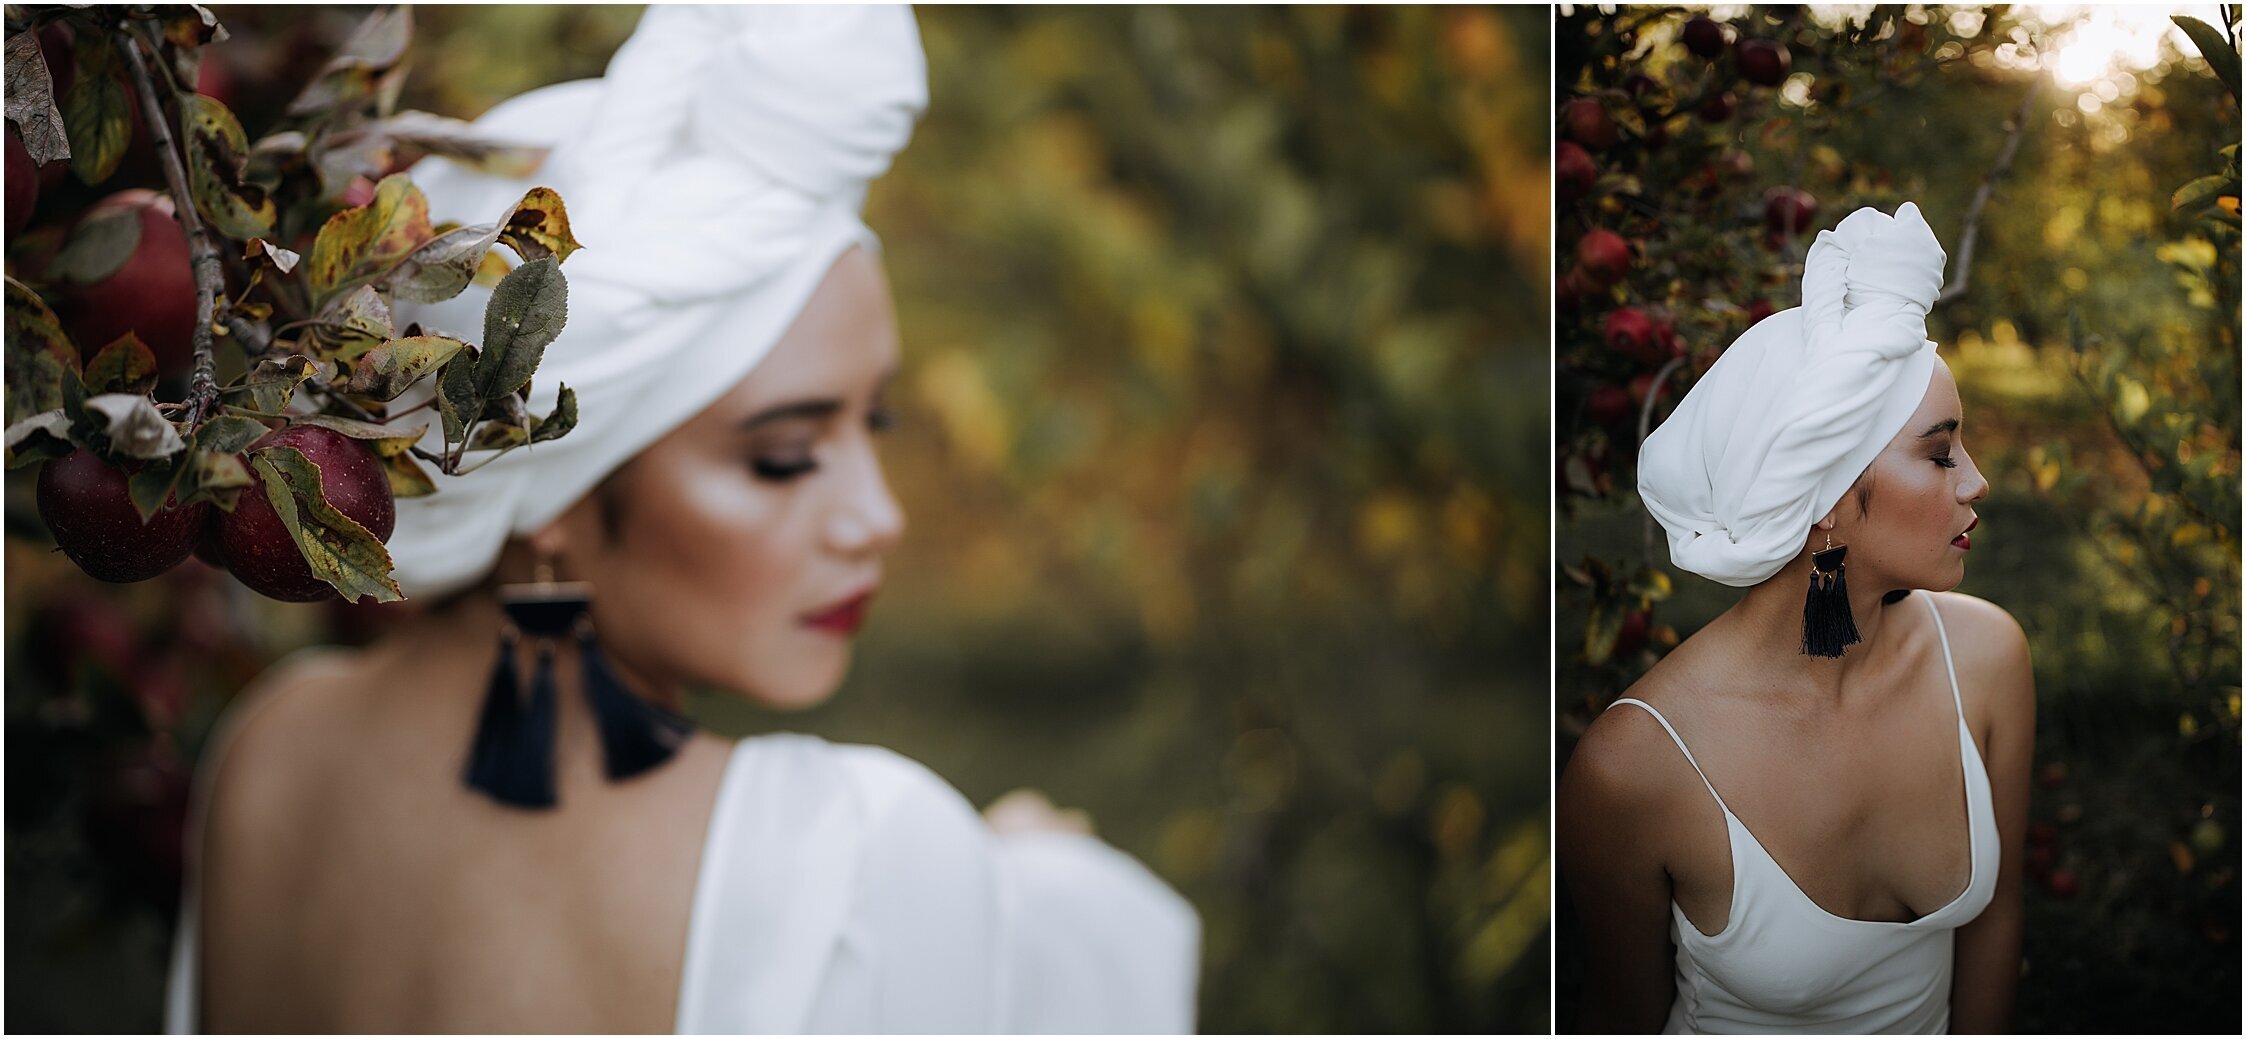 Zanda+Auckland+wedding+photographer+unique+portrait+photoshoot+ideas+autumn+winter+Windmill+apple+orchard+Coatesville+New+Zealand_23.jpeg